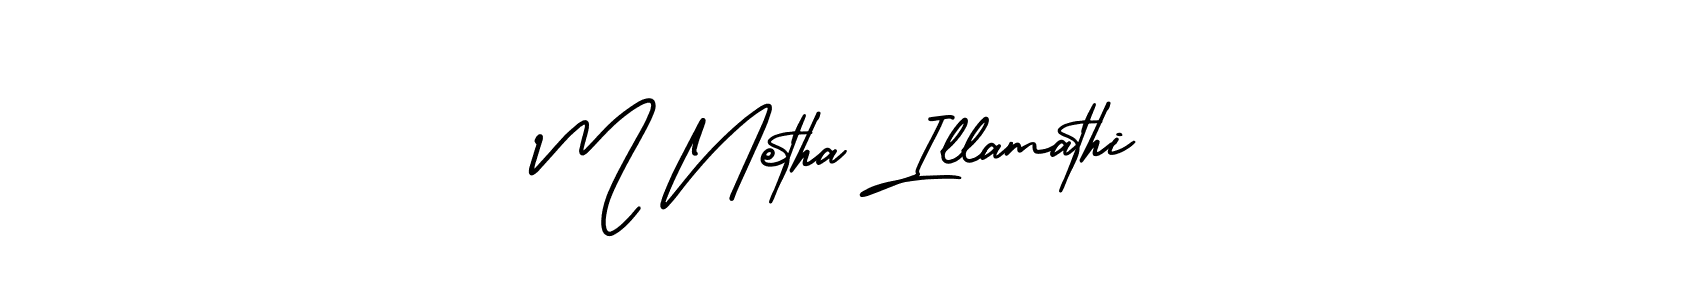 How to Draw M Netha Illamathi signature style? AmerikaSignatureDemo-Regular is a latest design signature styles for name M Netha Illamathi. M Netha Illamathi signature style 3 images and pictures png